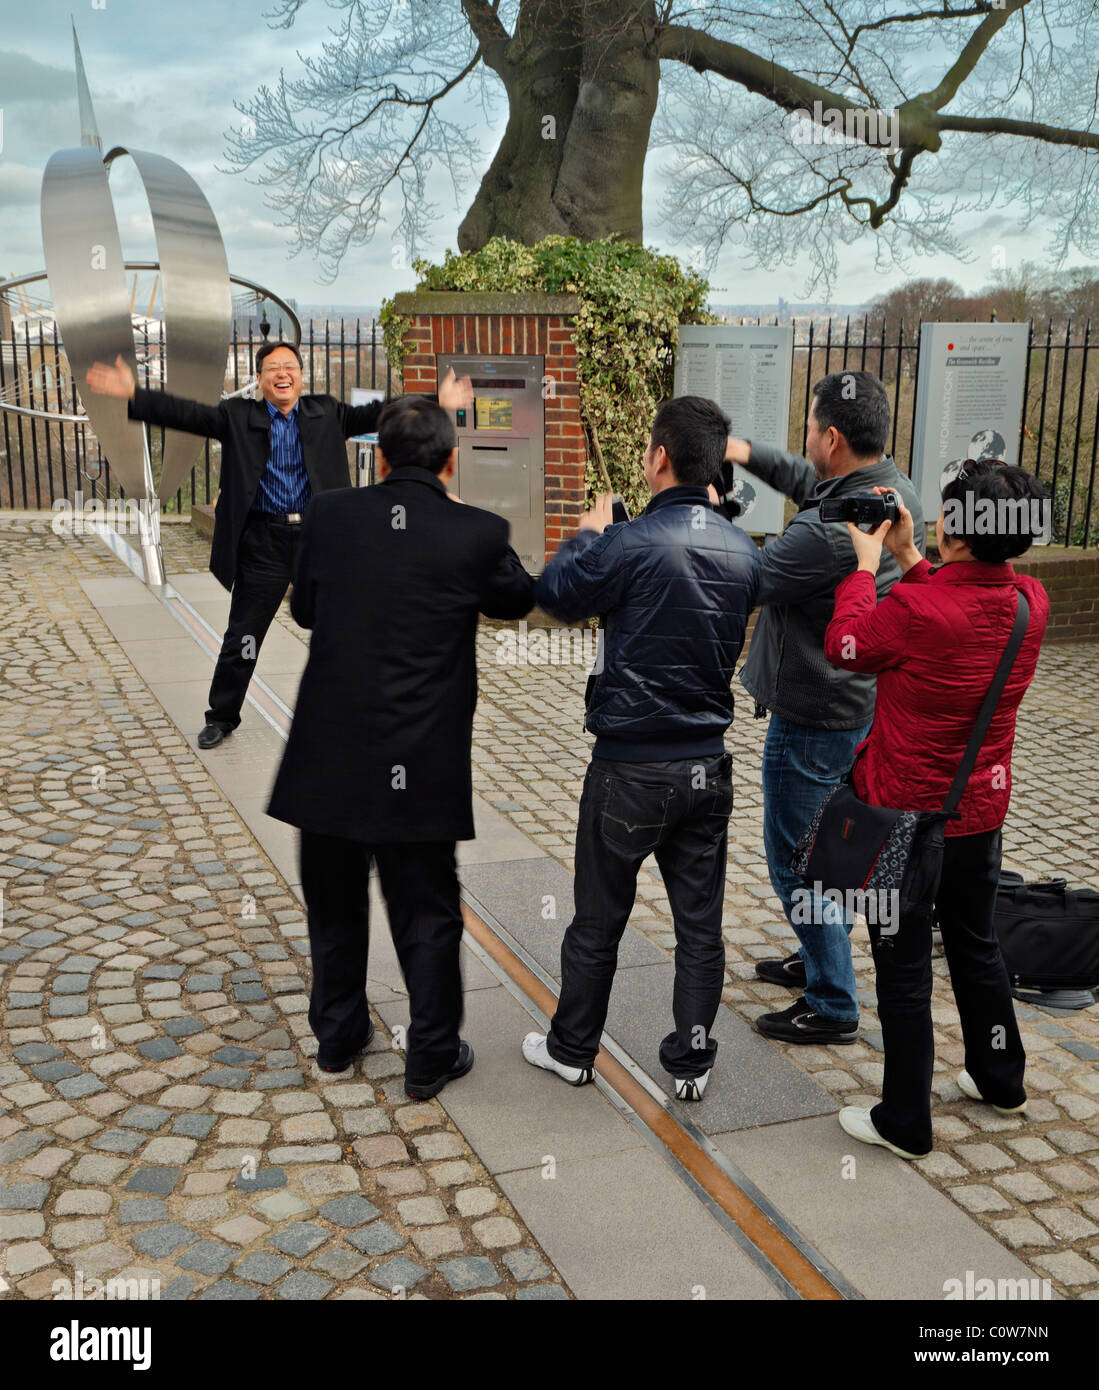 Les touristes posant sur le méridien de Greenwich. Banque D'Images